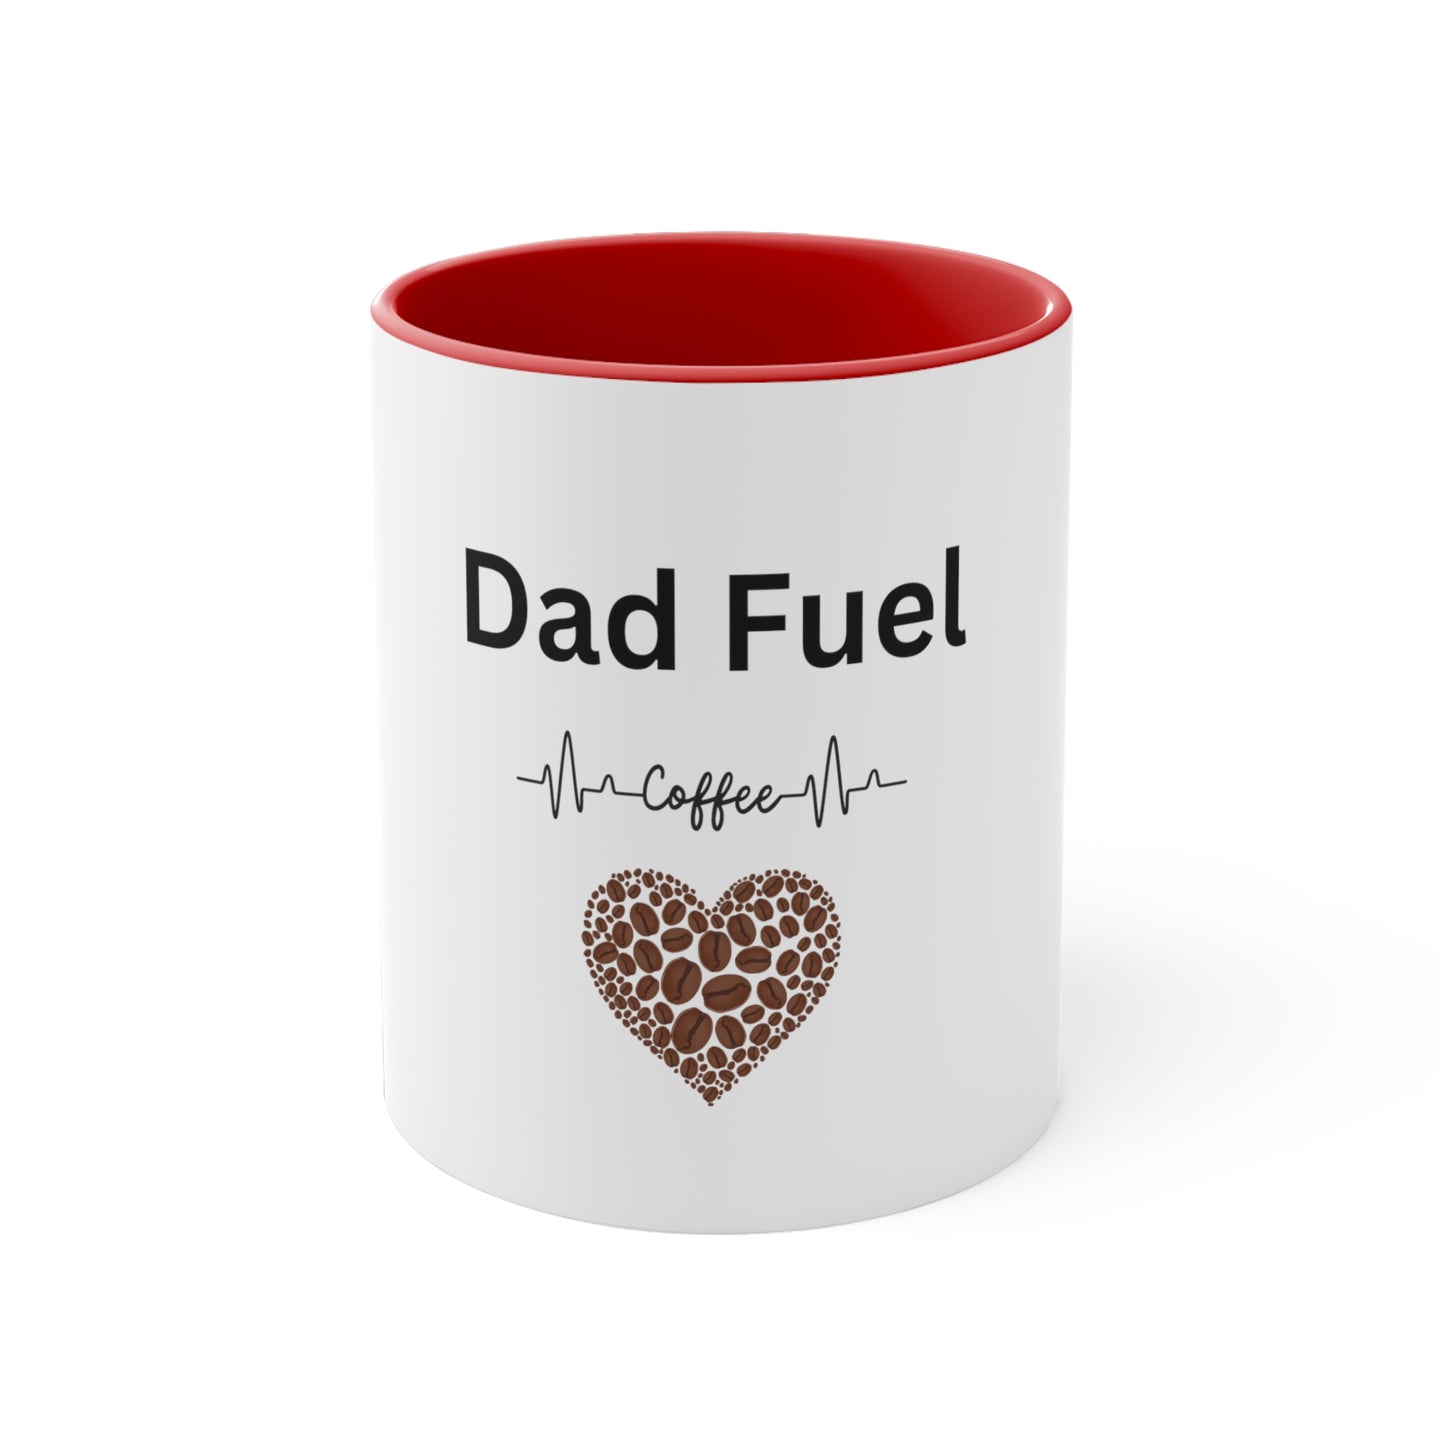 Dad Fuel Accent Coffee Mug, 11oz